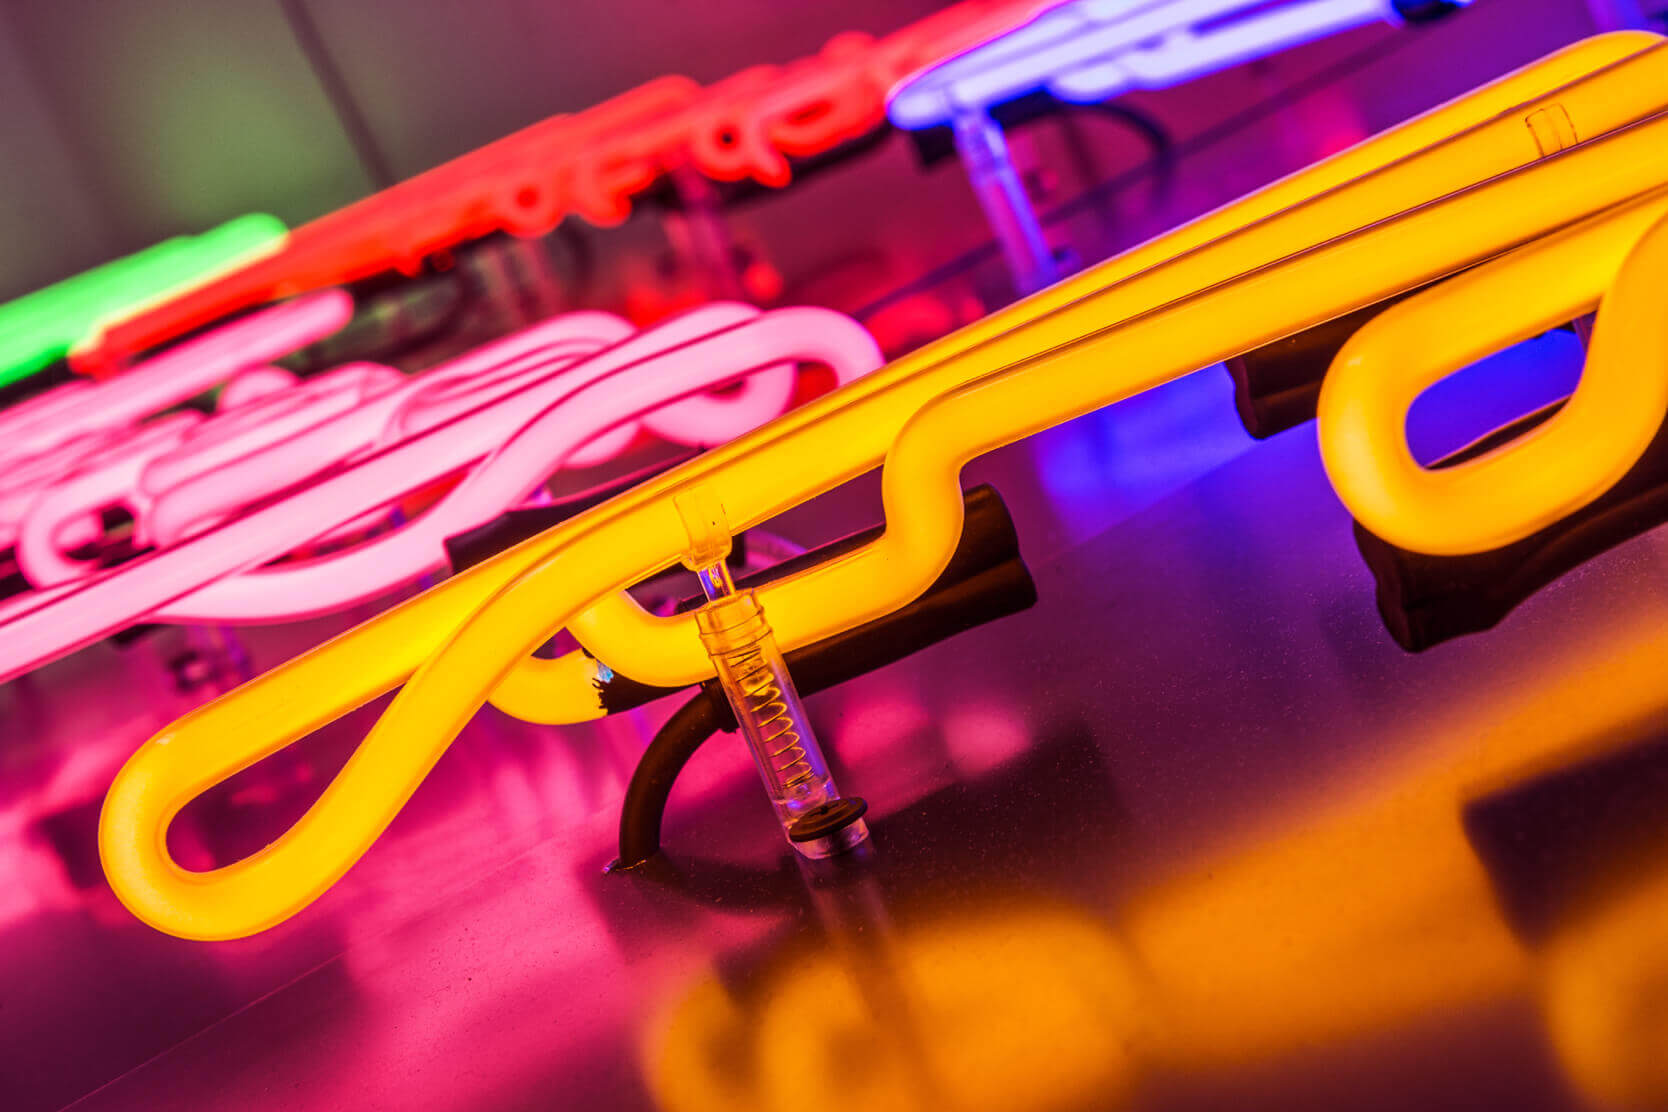 Esempi di insegne al neon - neon-press-airport-warsaw-neon-on-dibond-base-neon-neon-on-glass-wall-neon-producer-neon-neon-sign-neon-neon-neon-inside-colorful